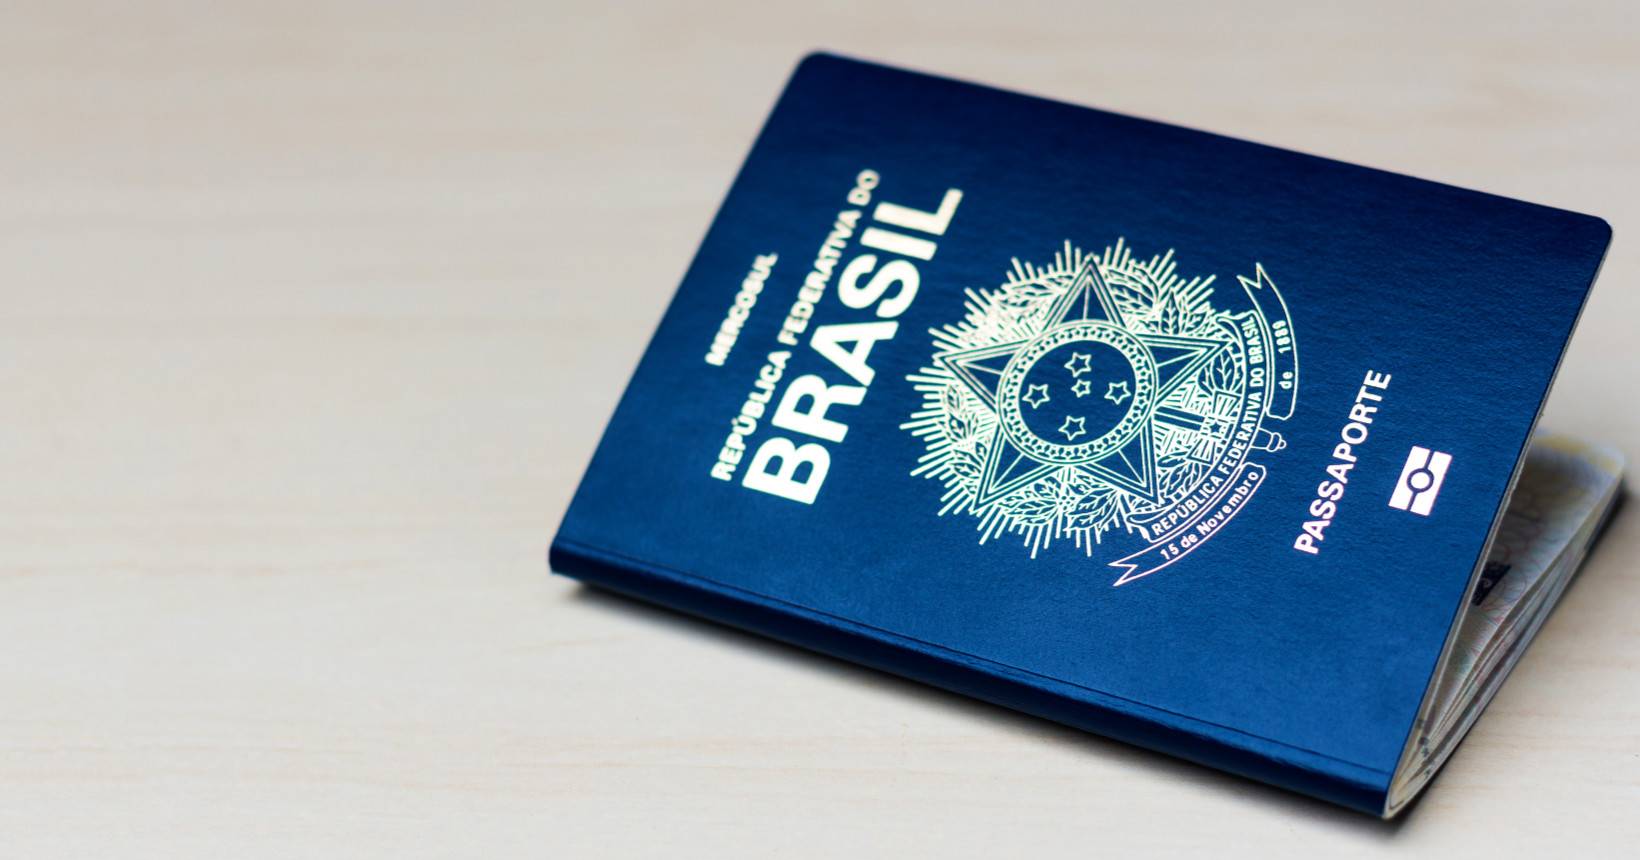 Governo divulga detalhes do novo passaporte brasileiro veja o que vai